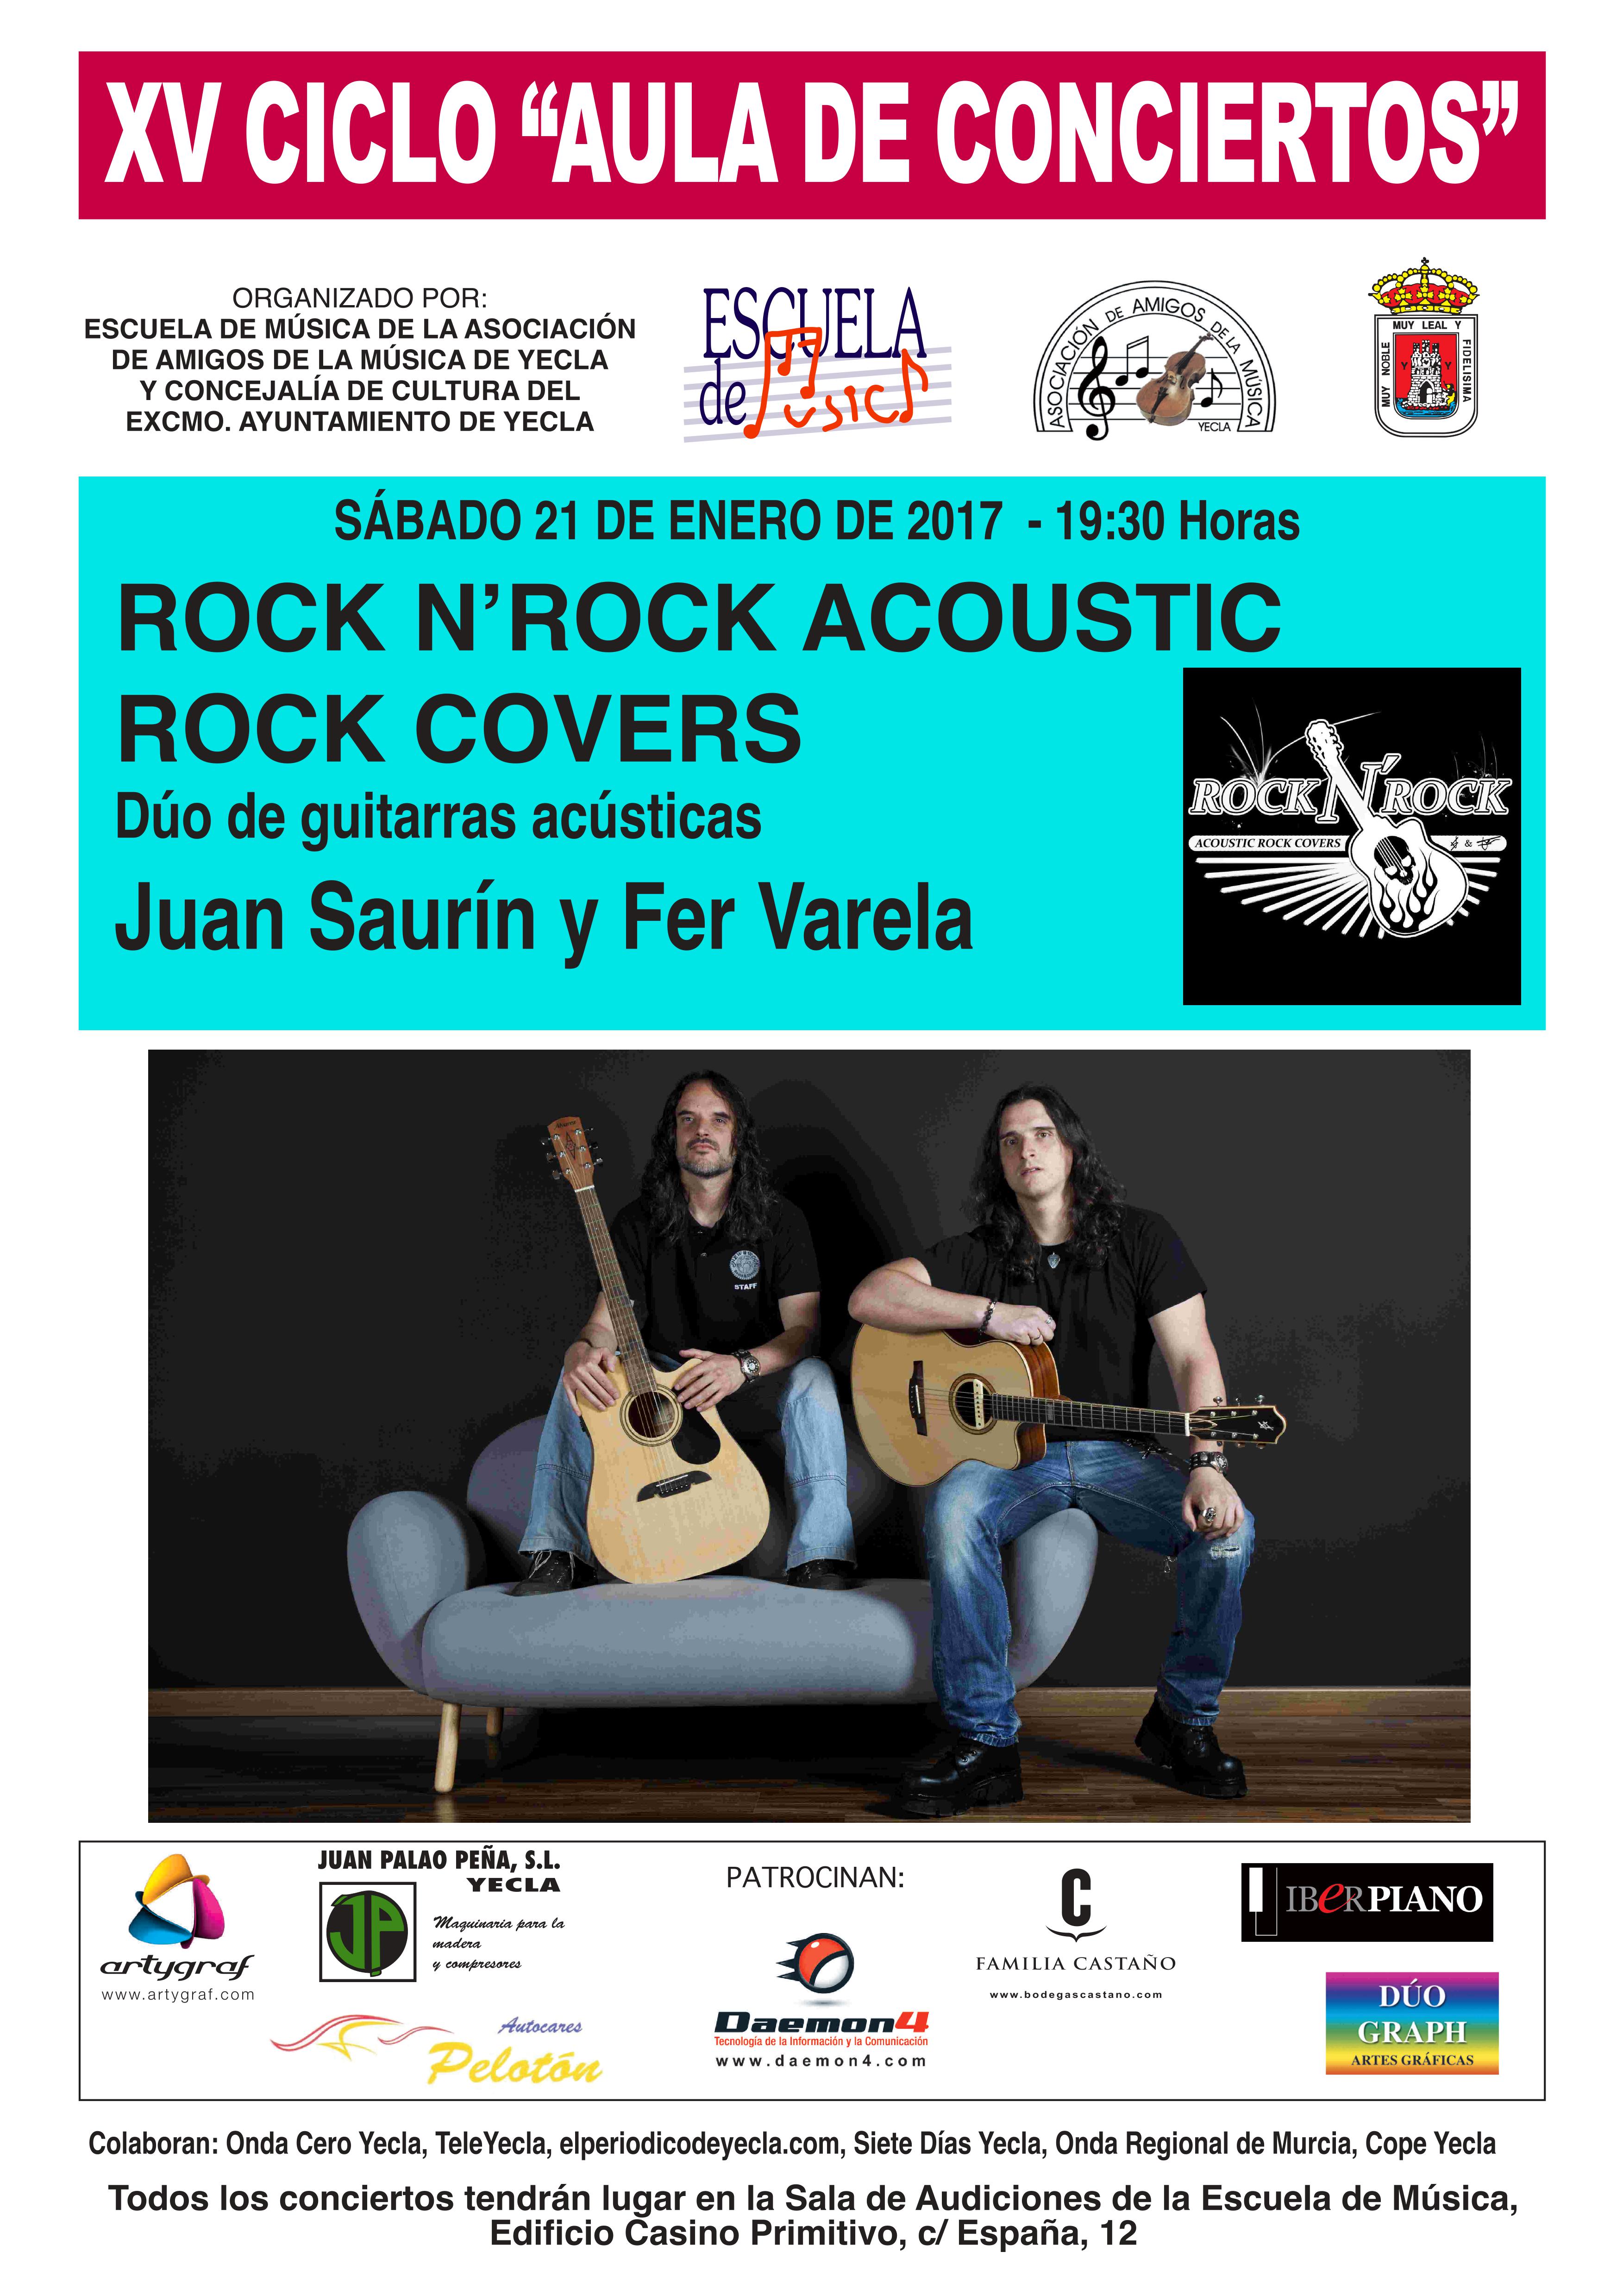 Fantástica noche con Acoustic Rock Covers!!